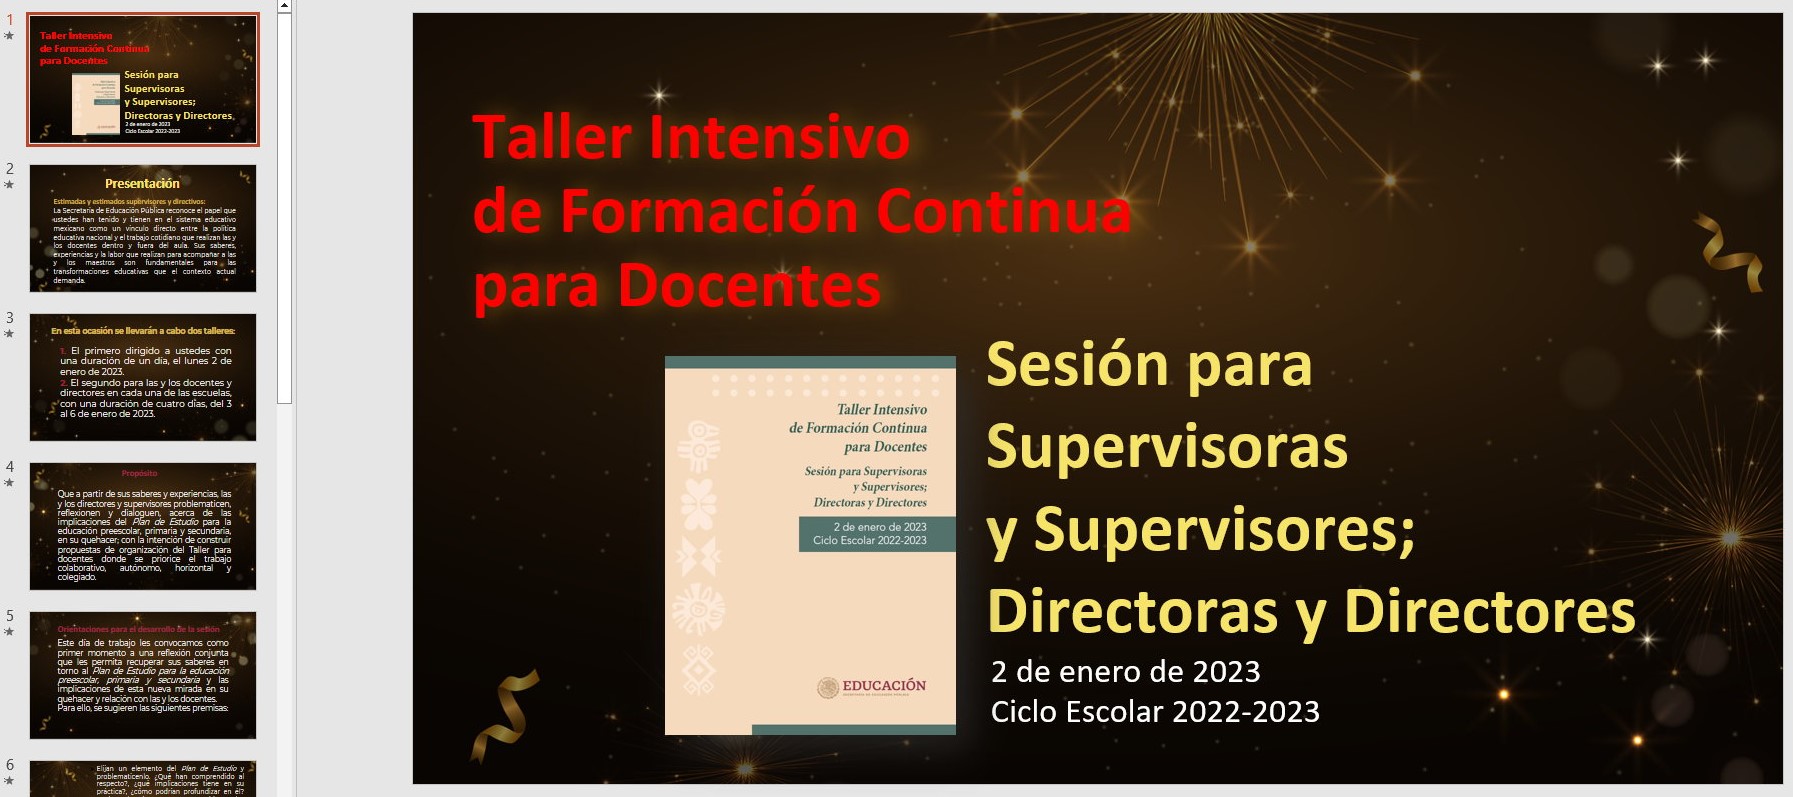 Presentación en PowerPoint y PDF del Taller Intensivo de Formación Continua para Docentes Sesión para Supervisoras y Supervisores; Directoras y Directores del 2 de enero de 2023